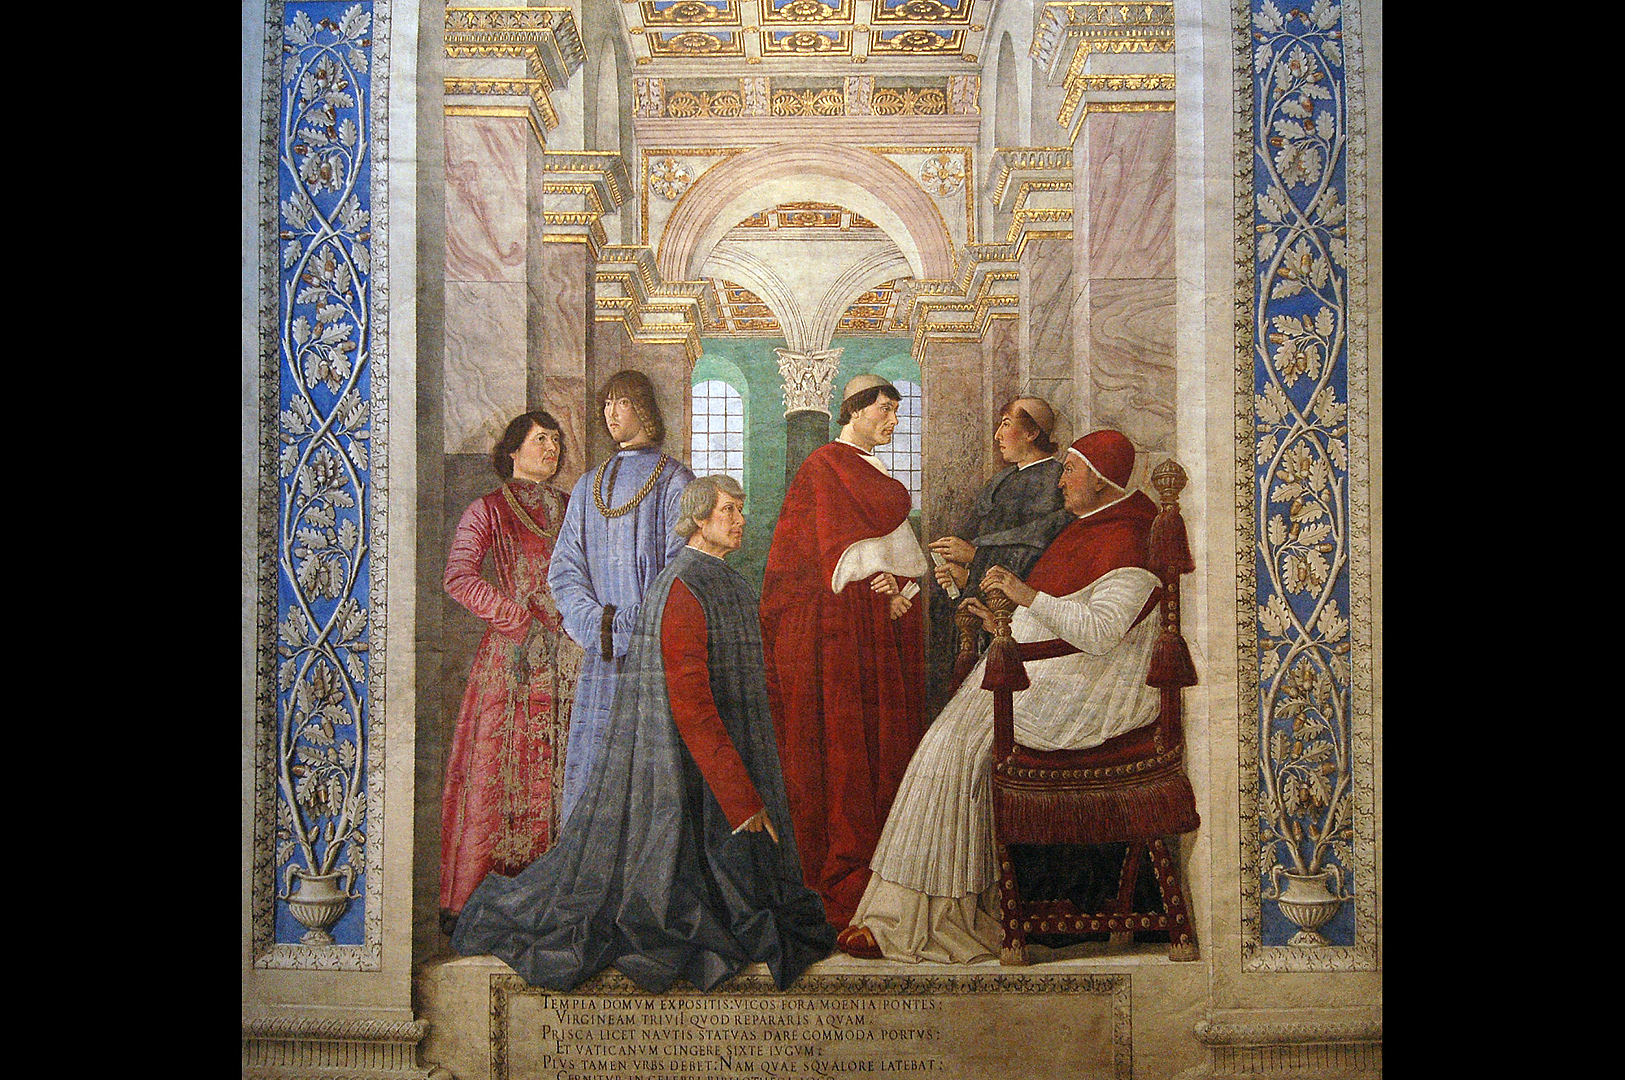 Melozzo da Forlì, Vatican Museums, Rome, Fresco by Melozzo da Forli, Rome, Italy